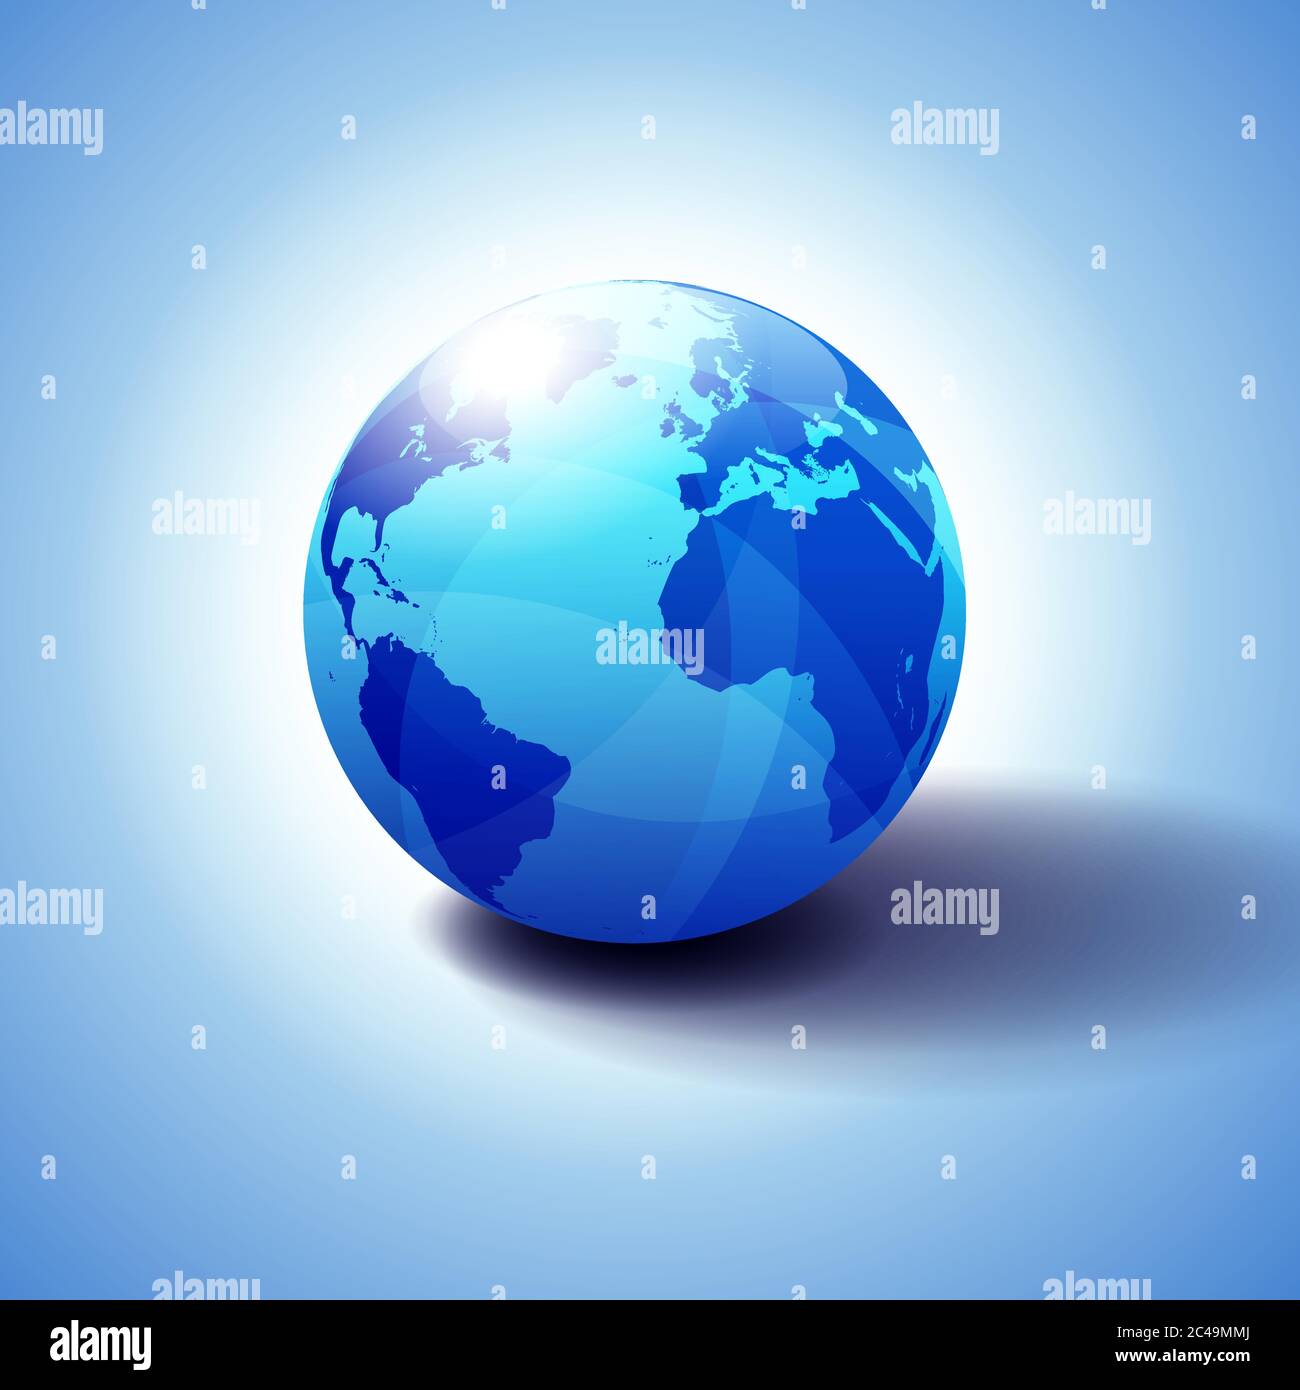 Europa, Nord- und Südamerika, Afrika Global World, Globe Icon 3D-Illustration, glänzende Kugel mit Global Map in subtilen Blues, die einen transp Stock Vektor